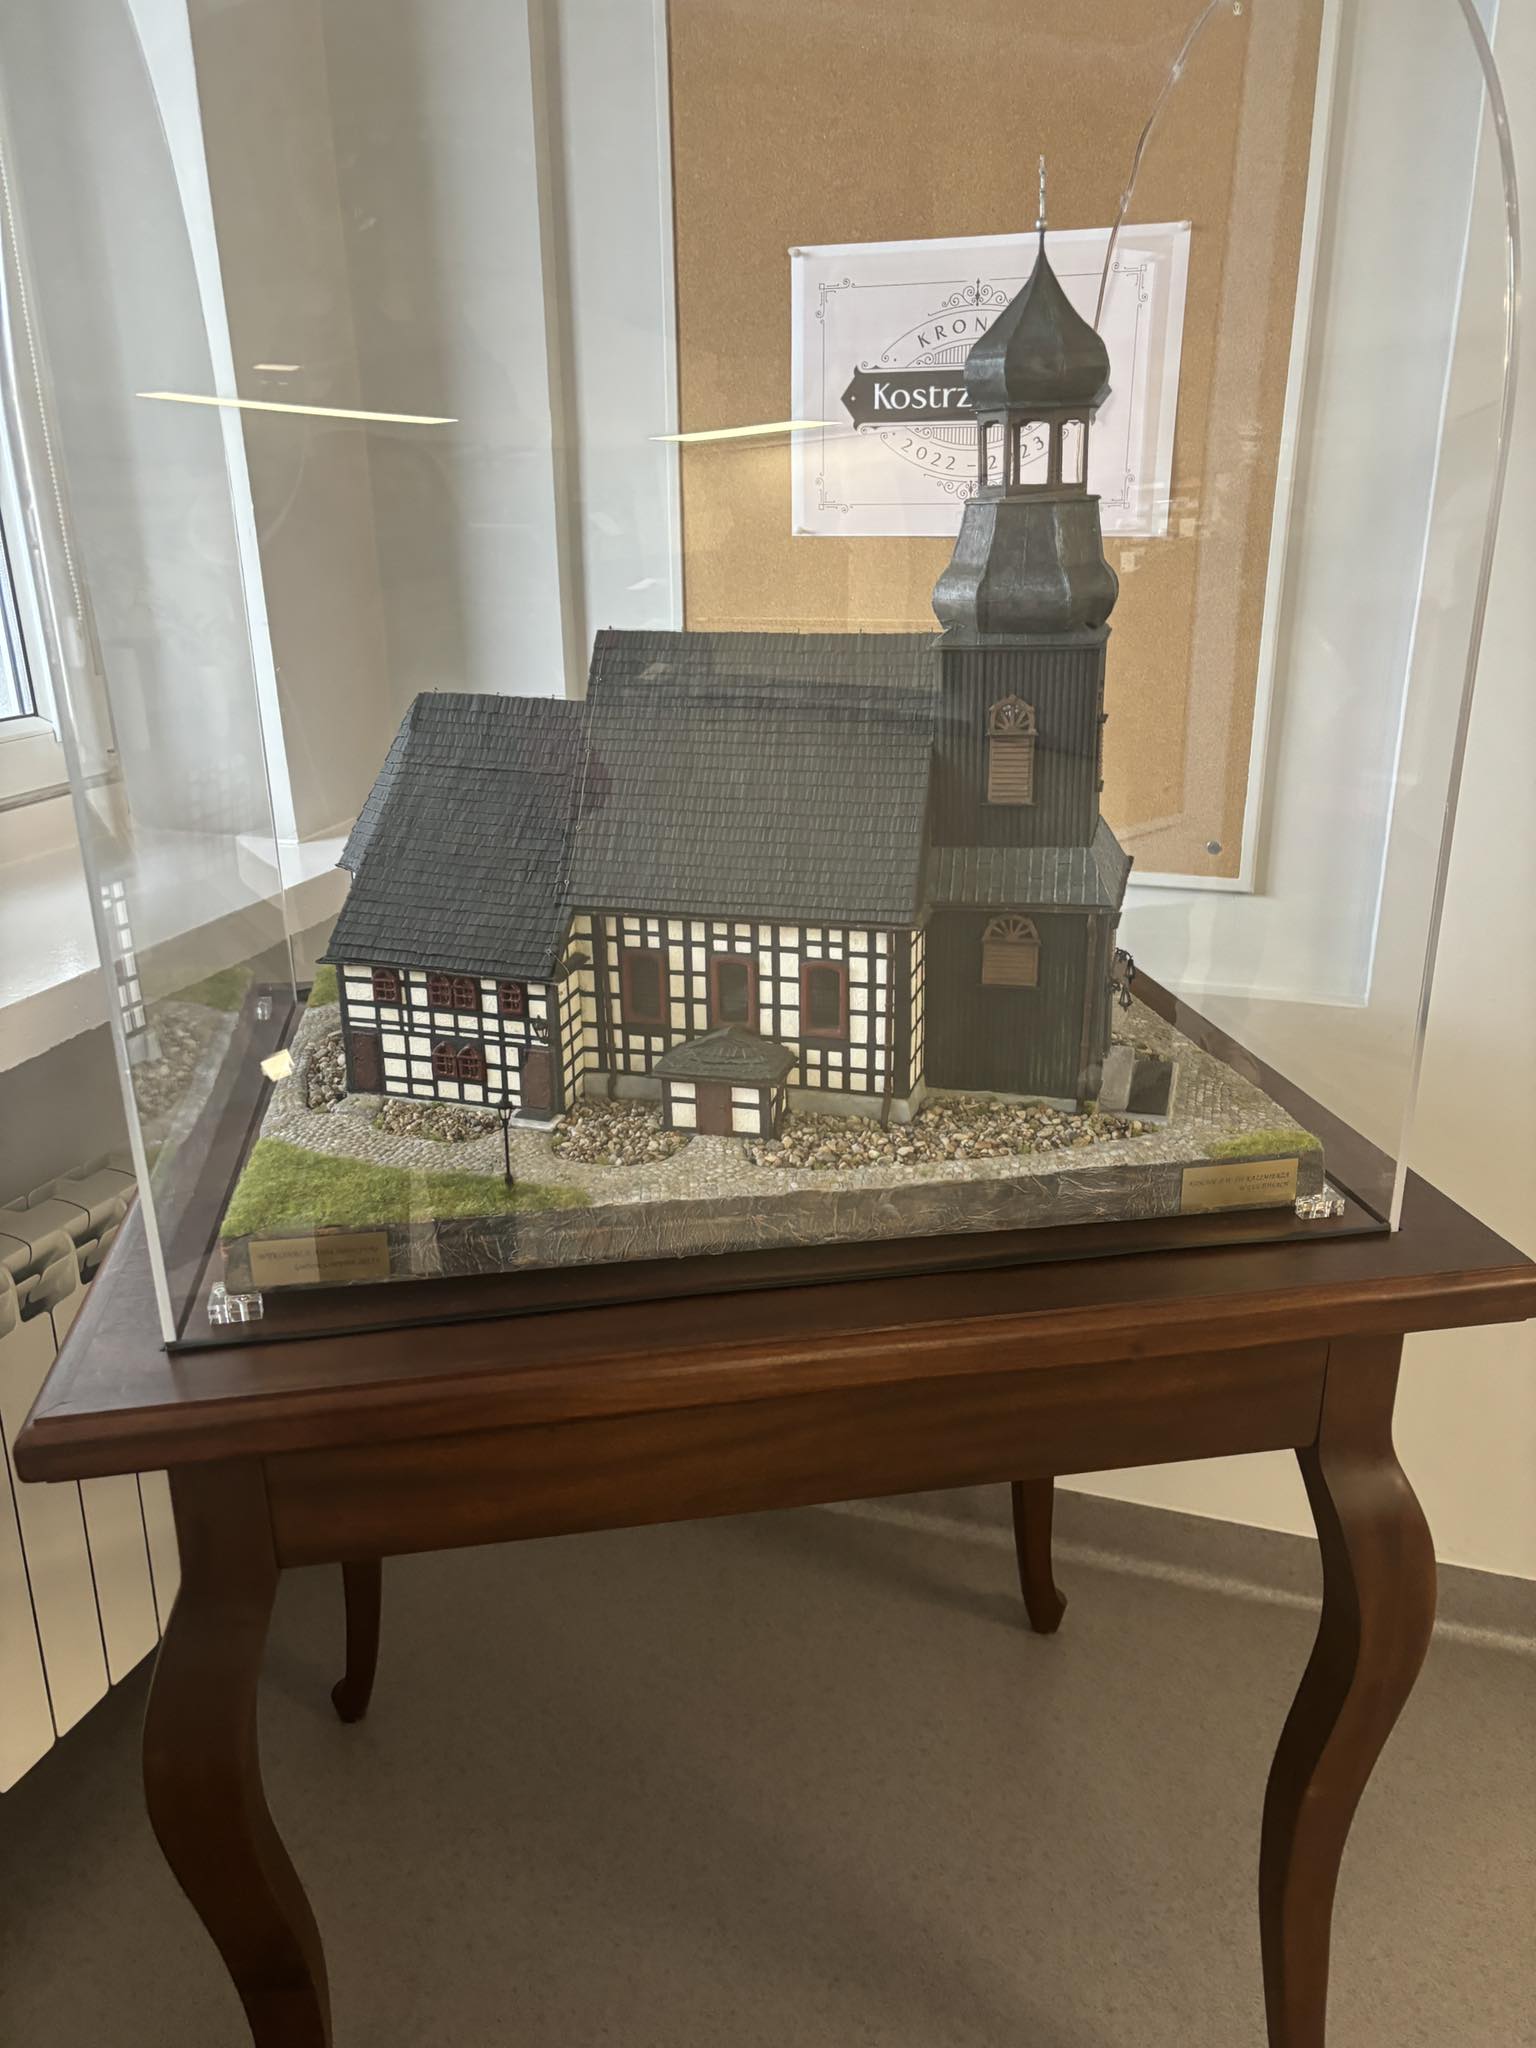 Zdjęcie przedstawia miniaturę kościoła, stojącą na drewnianym stoliku, przykrytą szklaną kopułą.